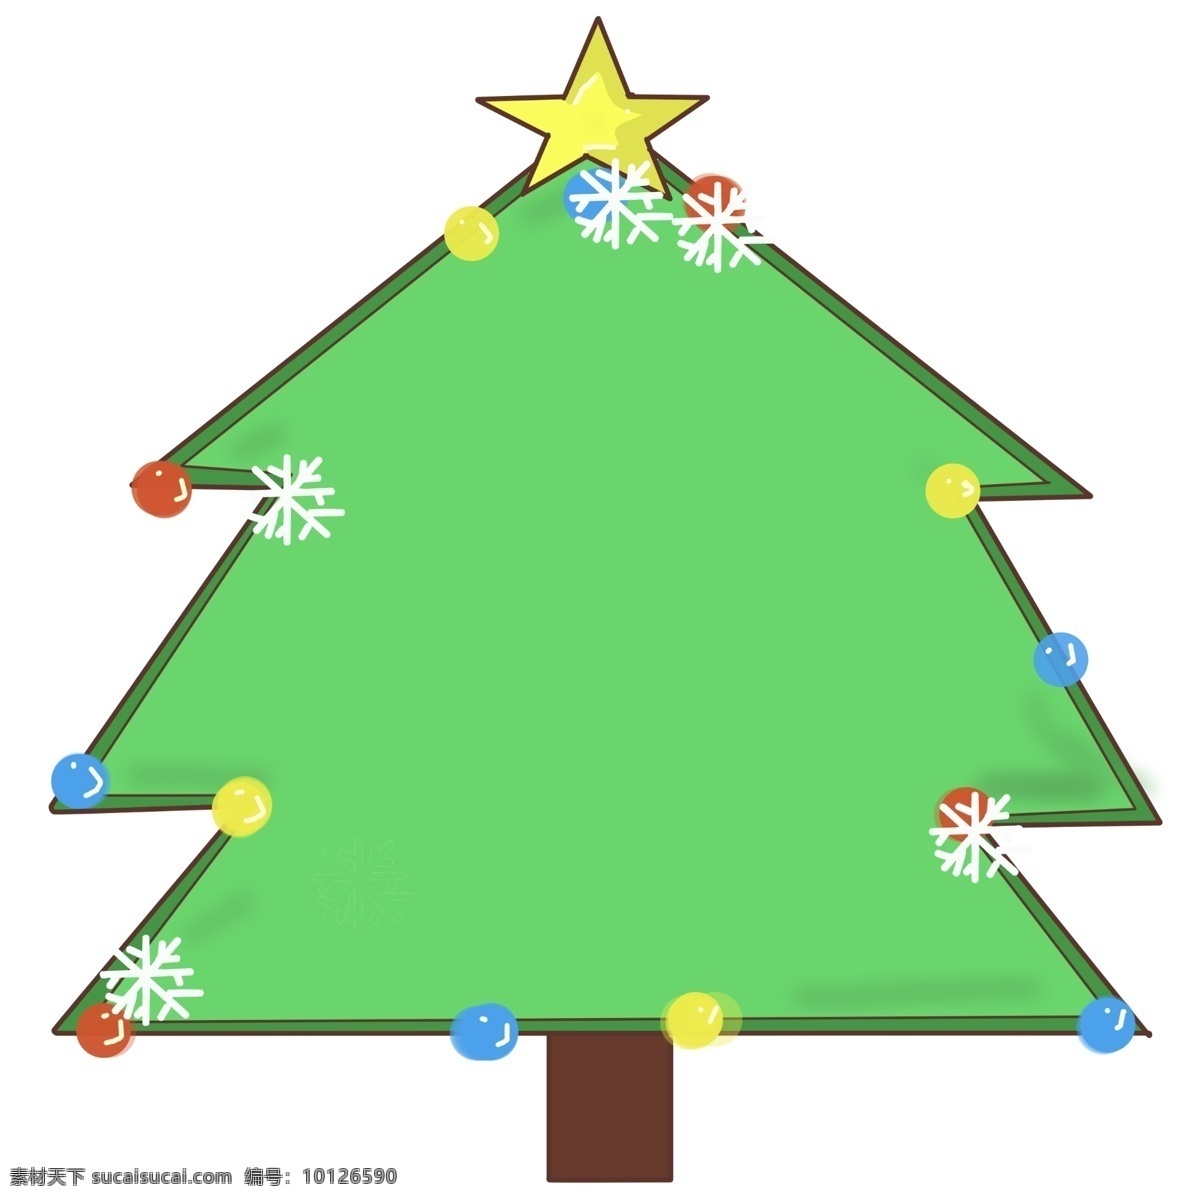 圣诞节 圣诞树 边框 插画 绿色 黄色的五角星 白色的雪花 彩色 圣诞球